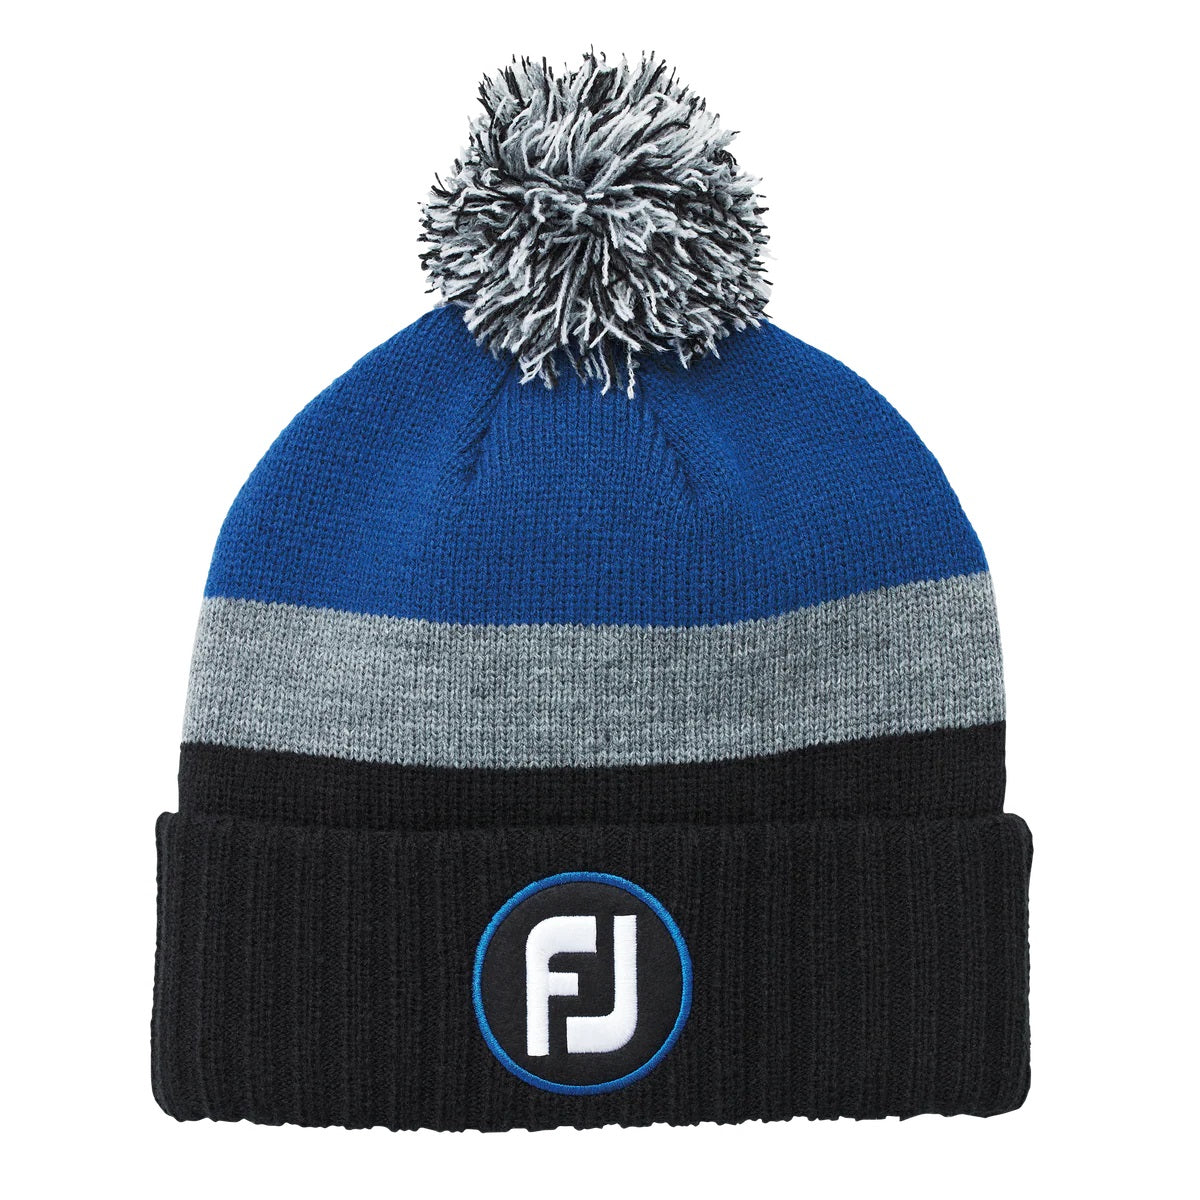 Footjoy FJ Pom Pom Knit Hat Winter Beanie